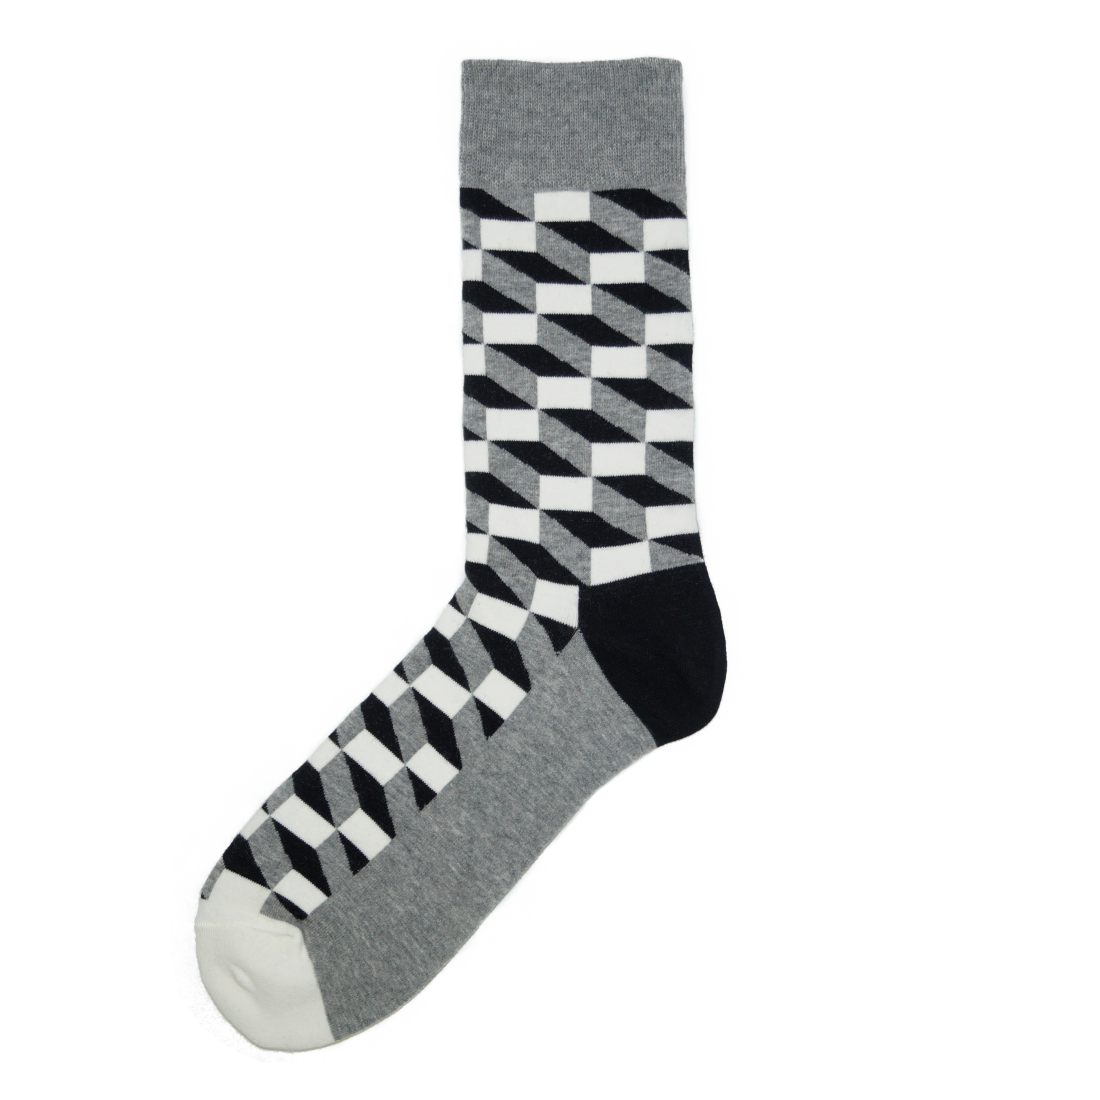 Medias Locas calcetines divertidos de diseño de efecto 3d Freaky Socks. Medias efecto 3d